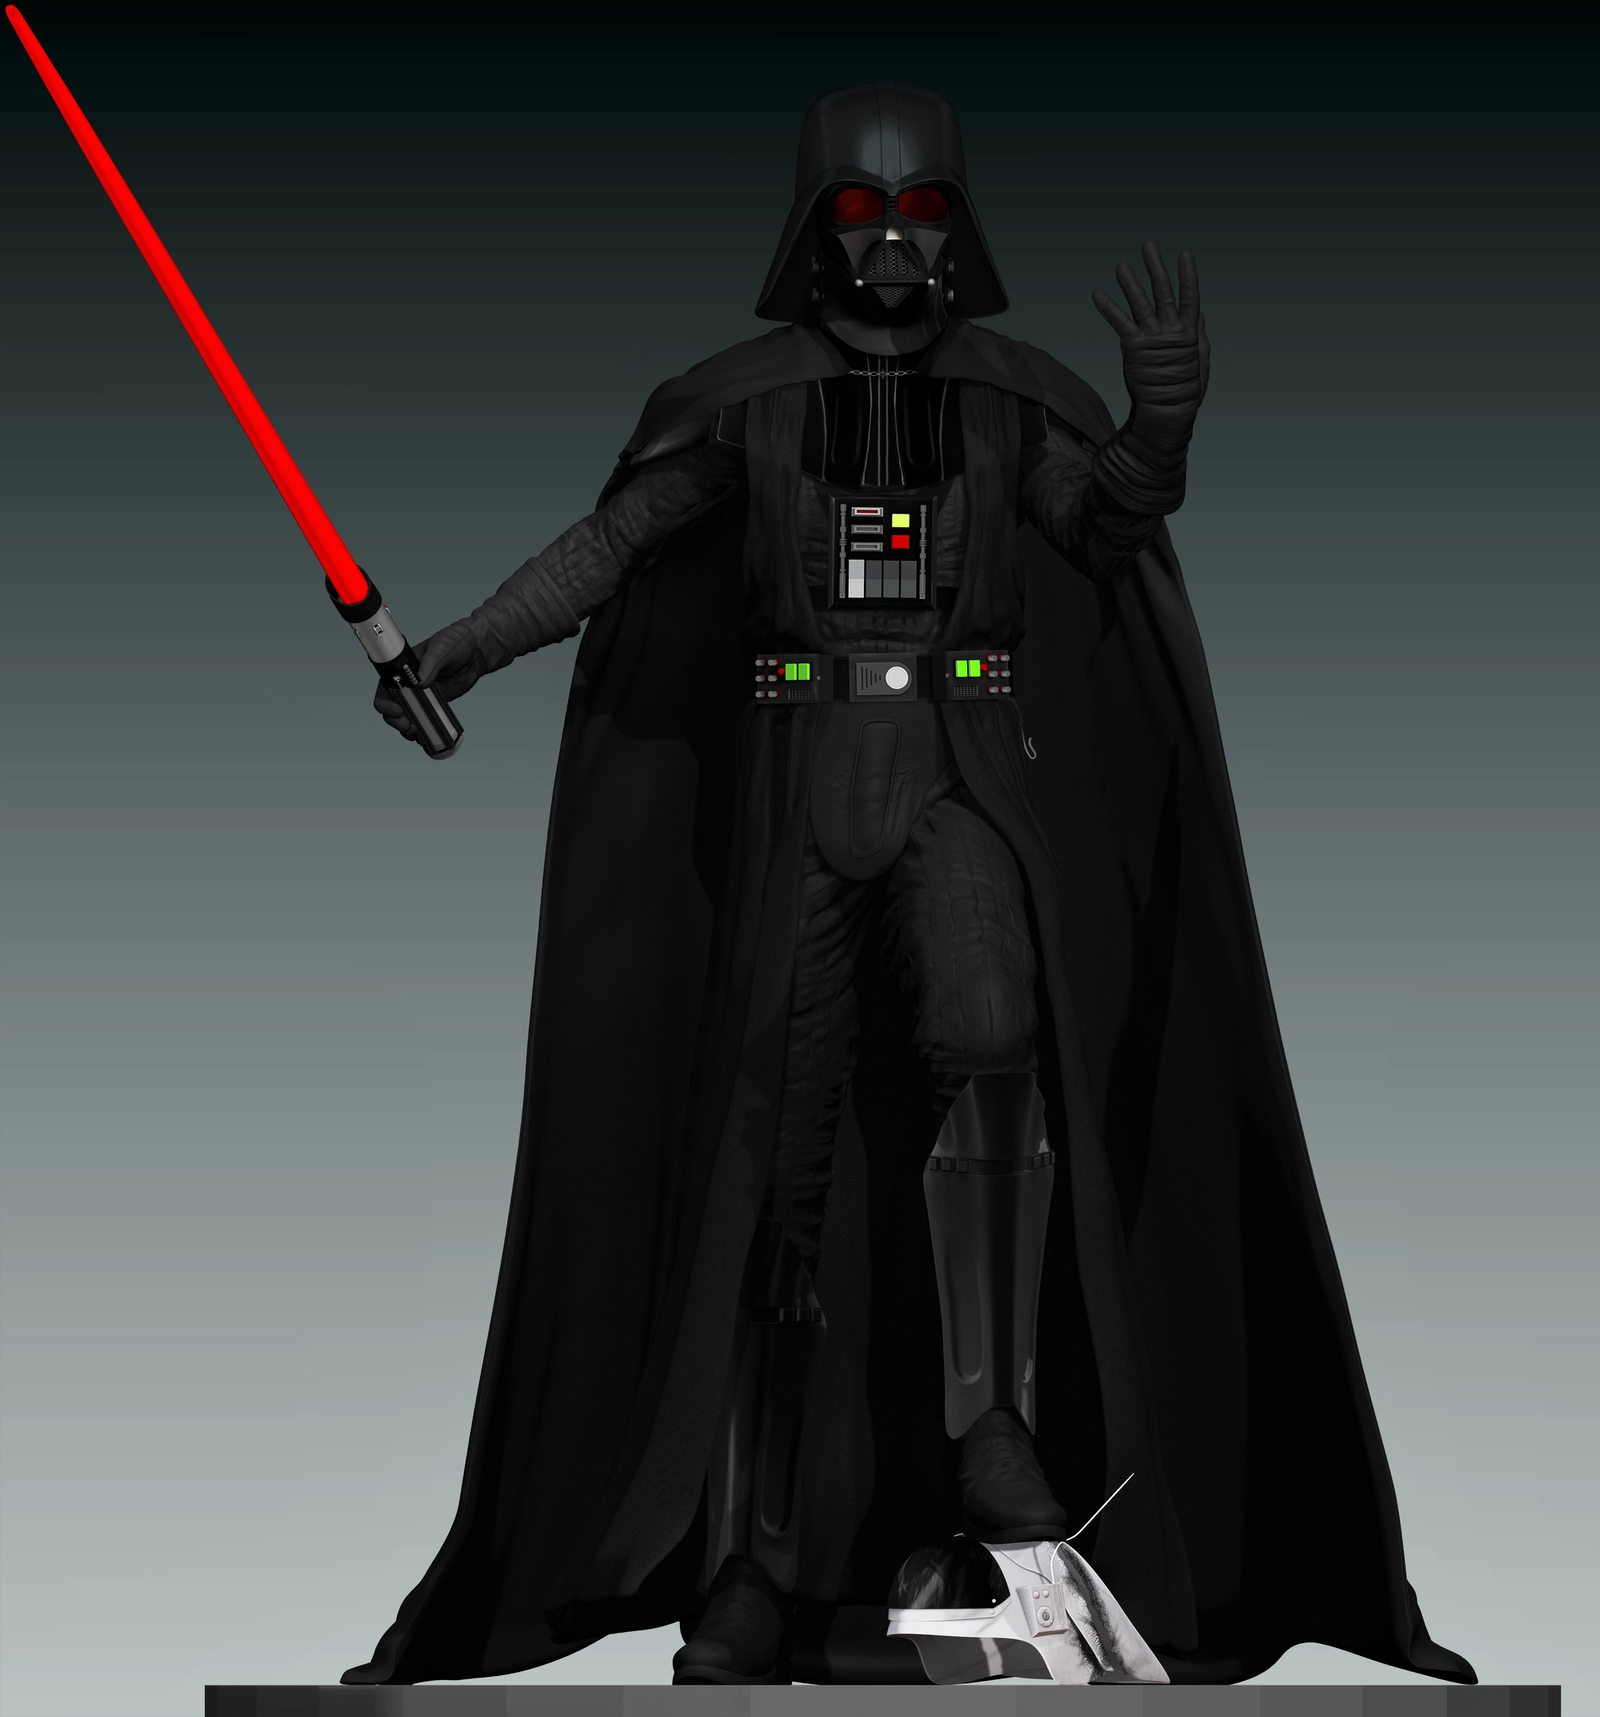 Lord Vader killing rebels